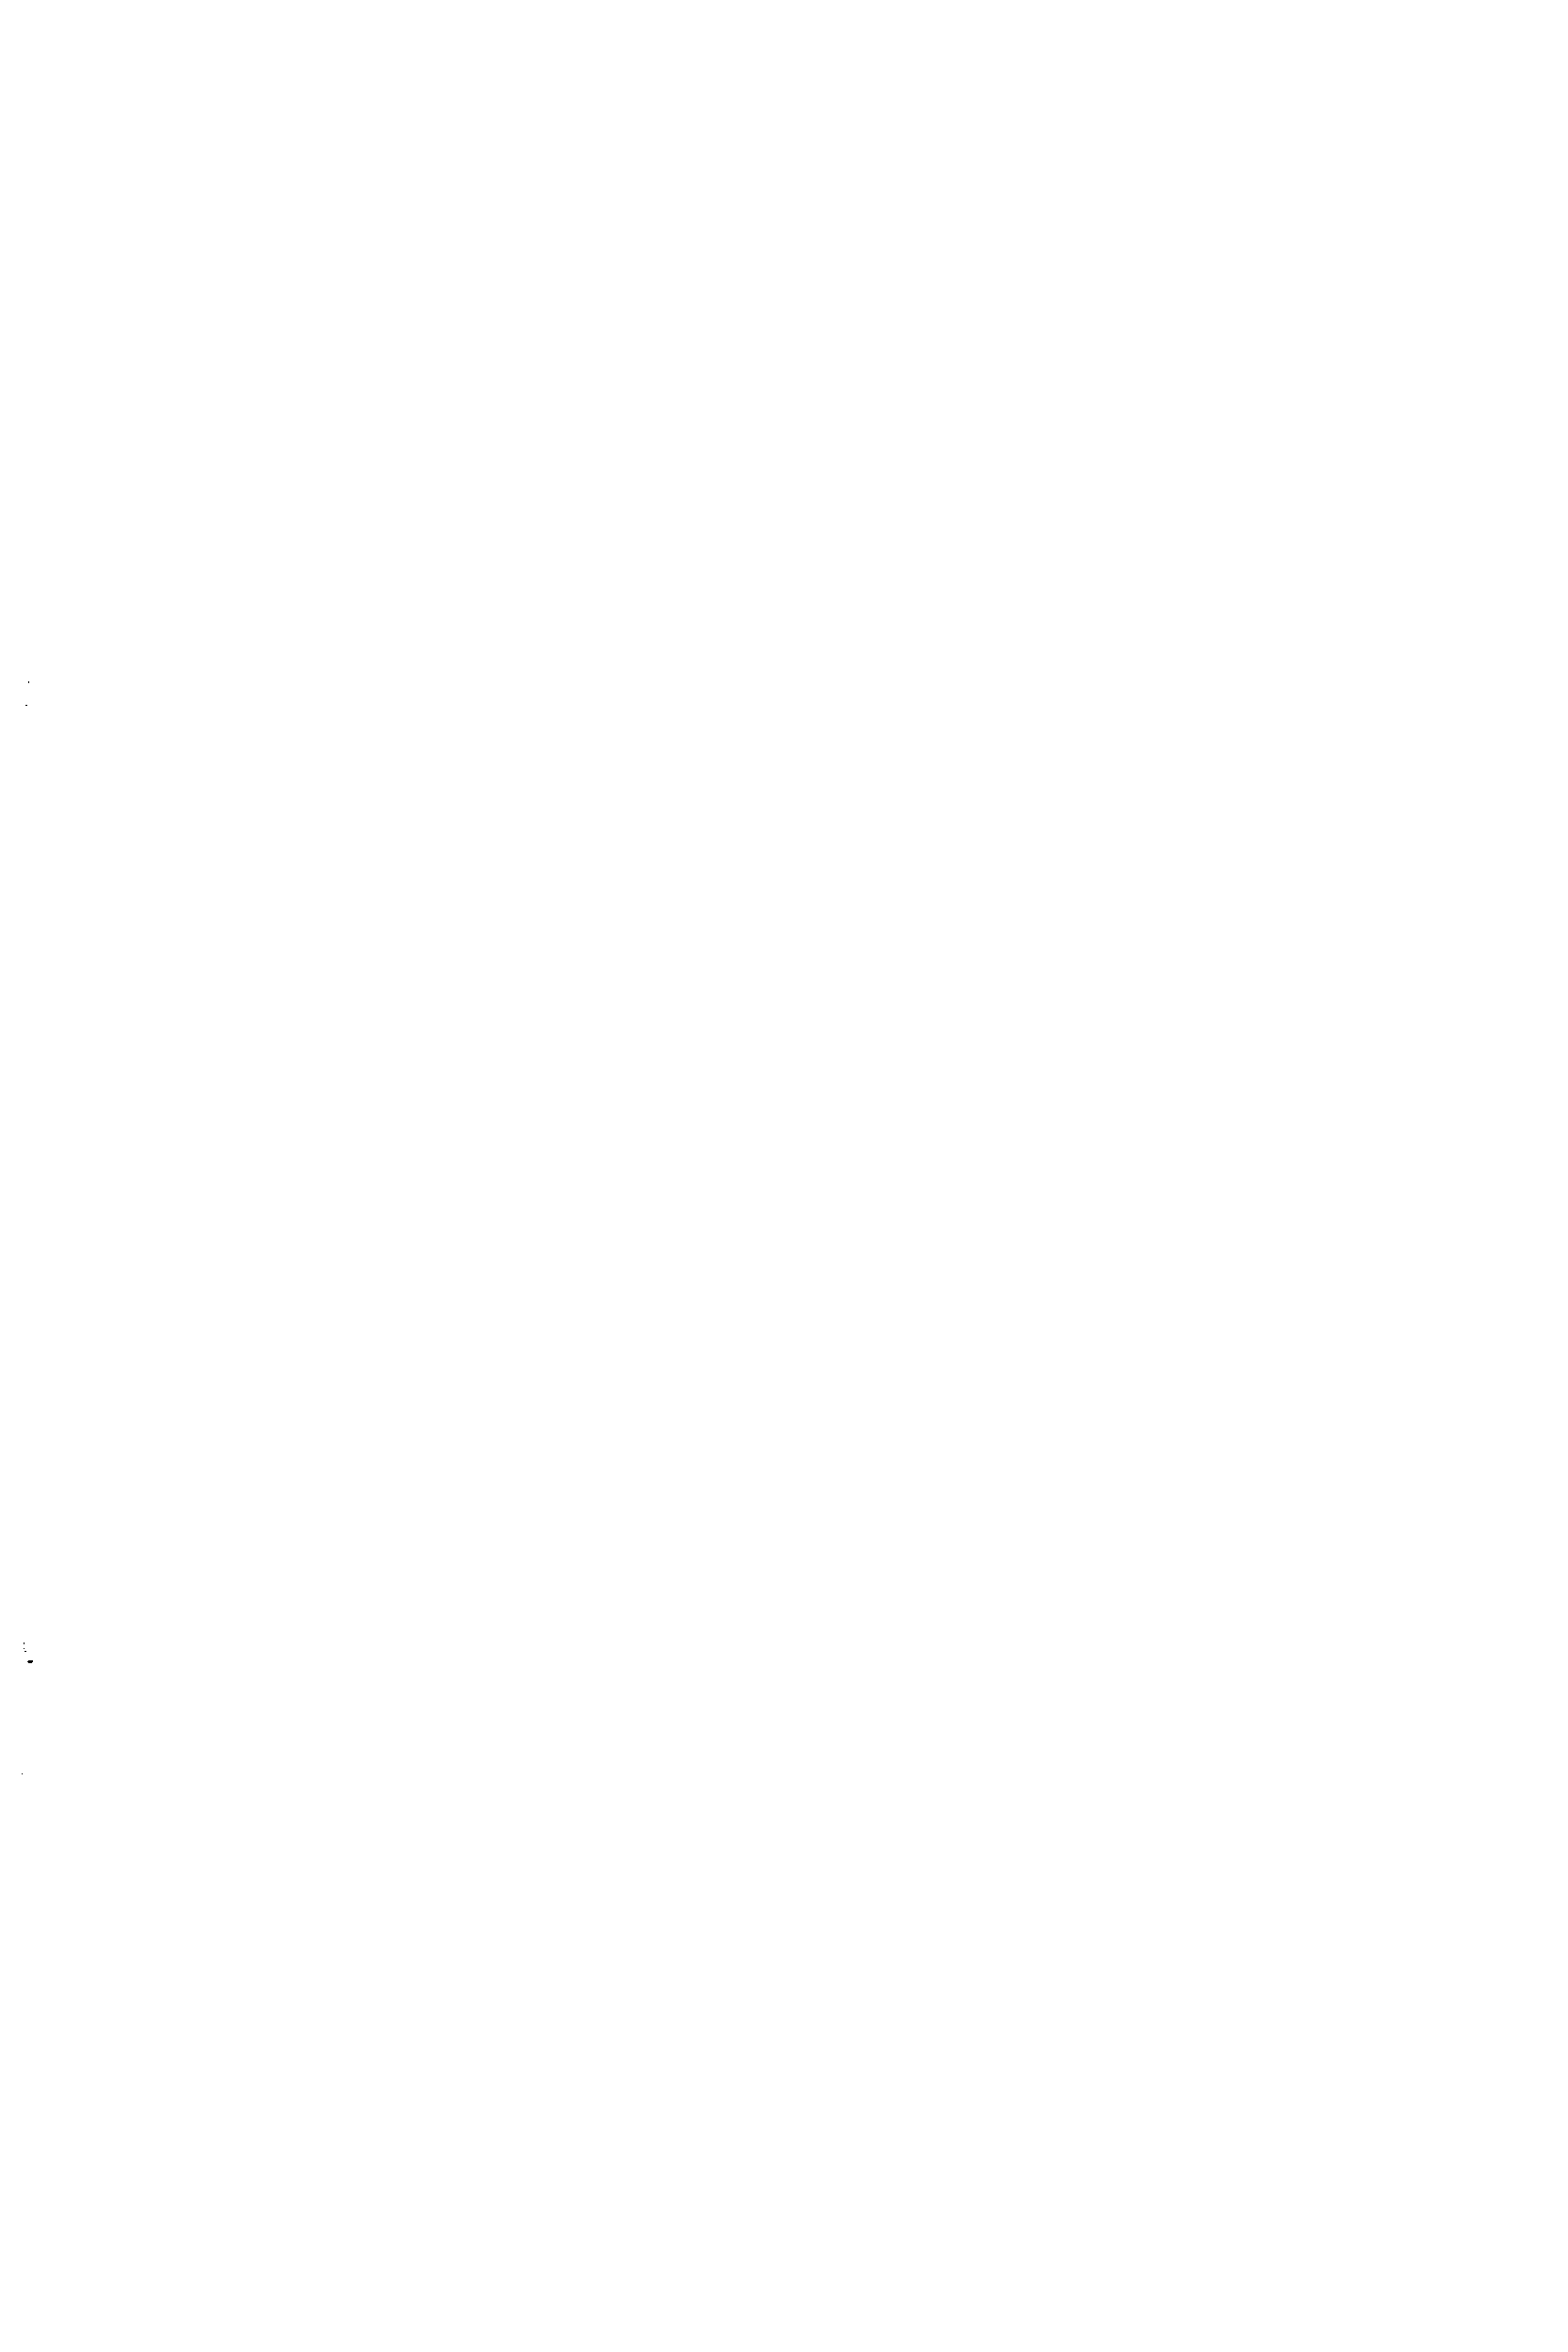 Рис. 6.1. Конструкции гладких цилиндрических обечаек (корпусов) аппаратов а — с фланцем и плоским днищем б — с жесткими внутренними перегородками в — с отбортованными эллиптическим и коническим днищами г — с неотборто-ванными сферическим и коническим днищами д — с рубашкой на нижней части аппарата е — с рубашкой на средней части аппарата
